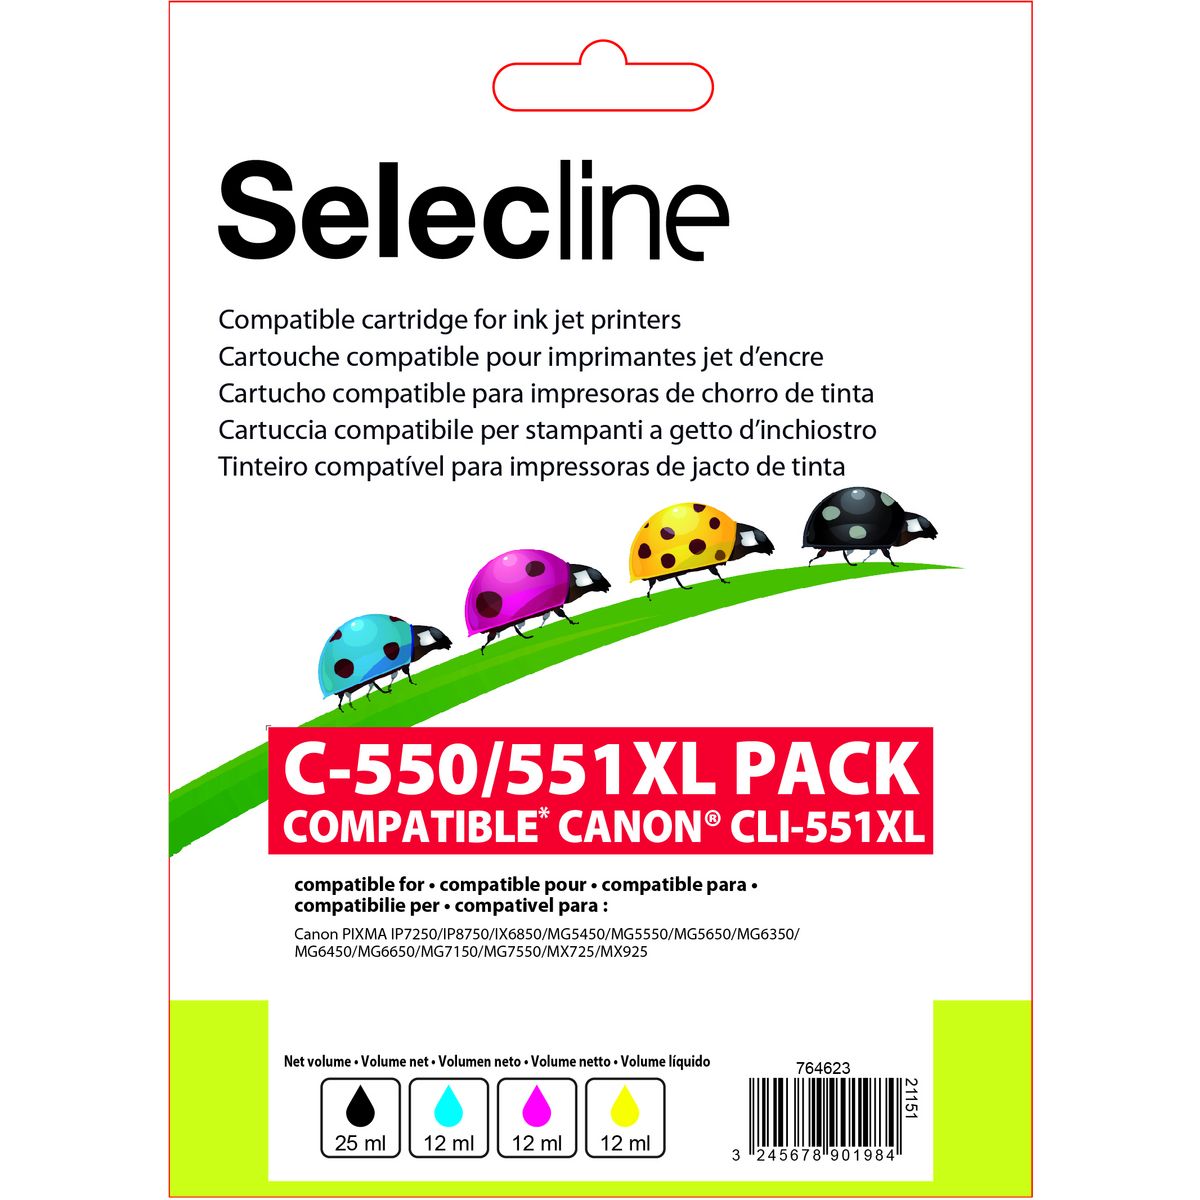 SELECLINE Cartouche 4 Couleurs C-551 PACK